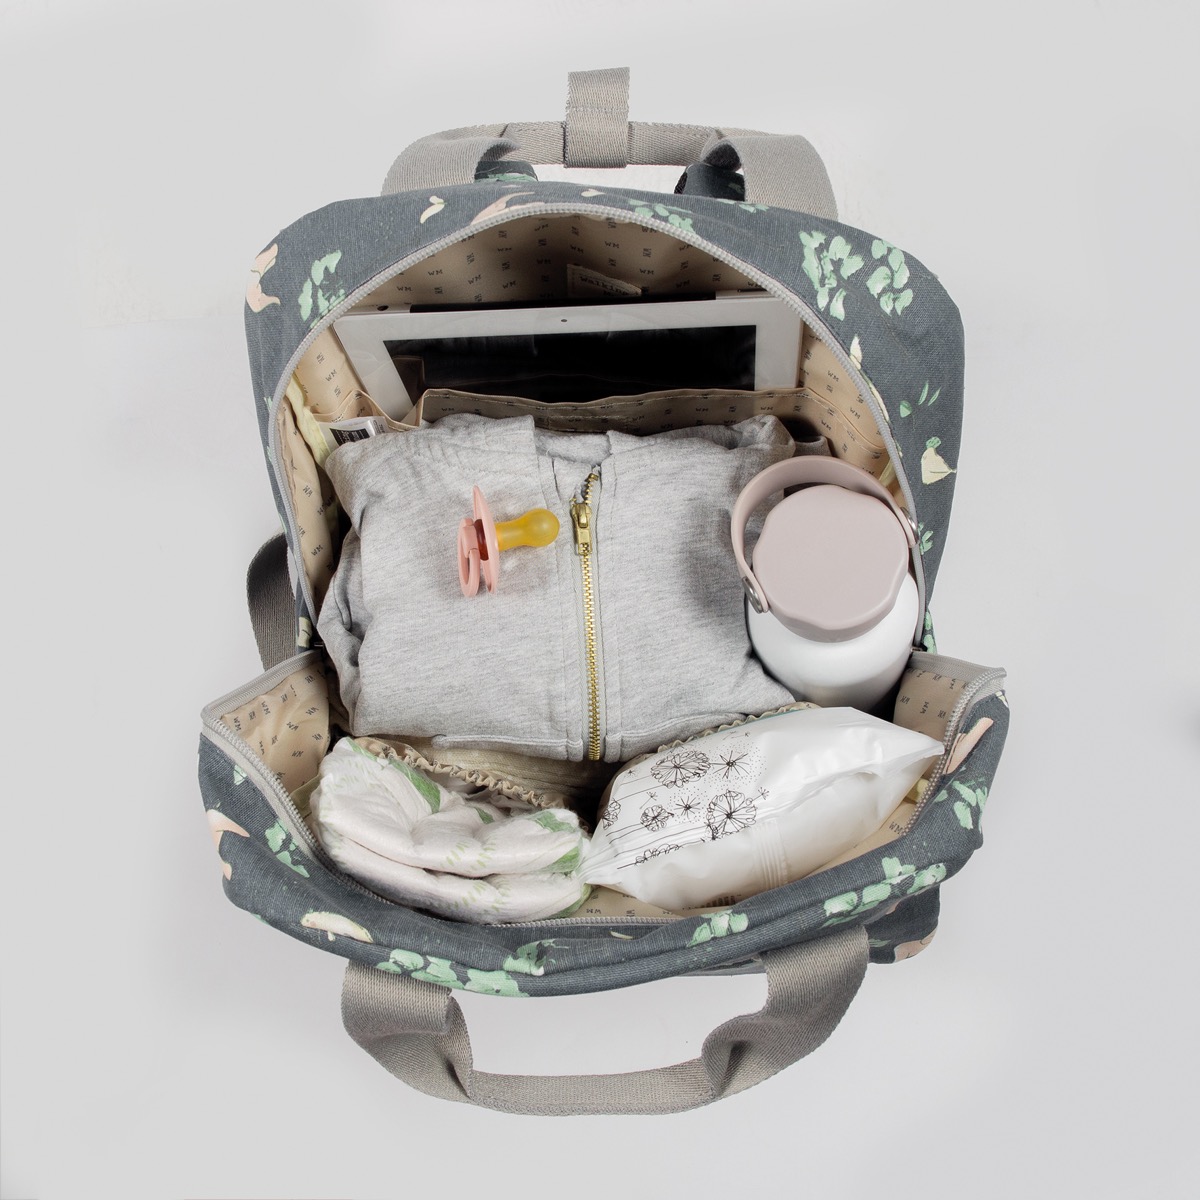 Bolsos, maletas, mochilas y accesorios para hospital y cochecito de bebé  Walking Mum — LAS4LUNAS